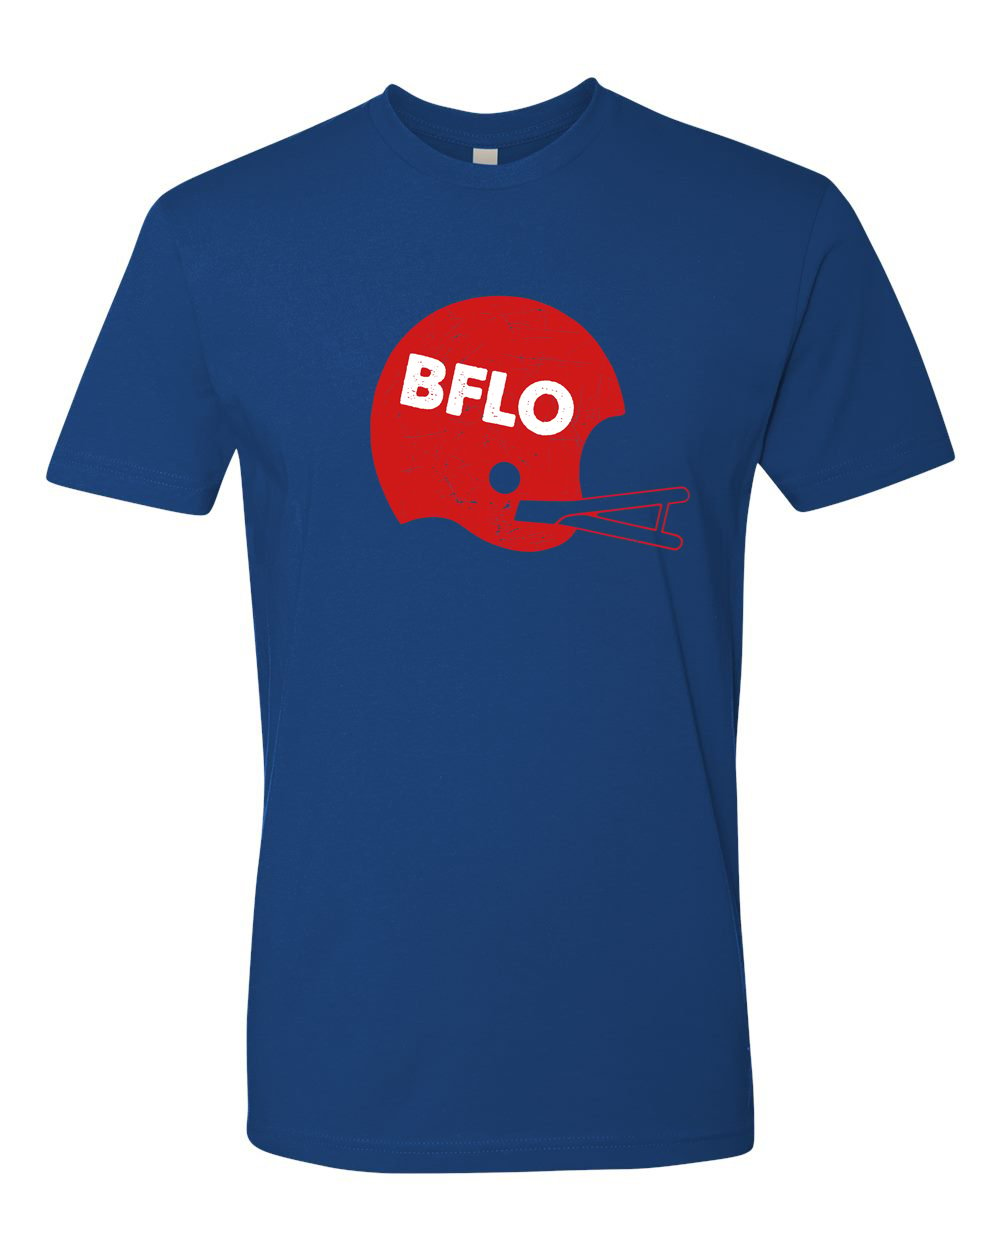 Image of "BFLO" Football Helmet